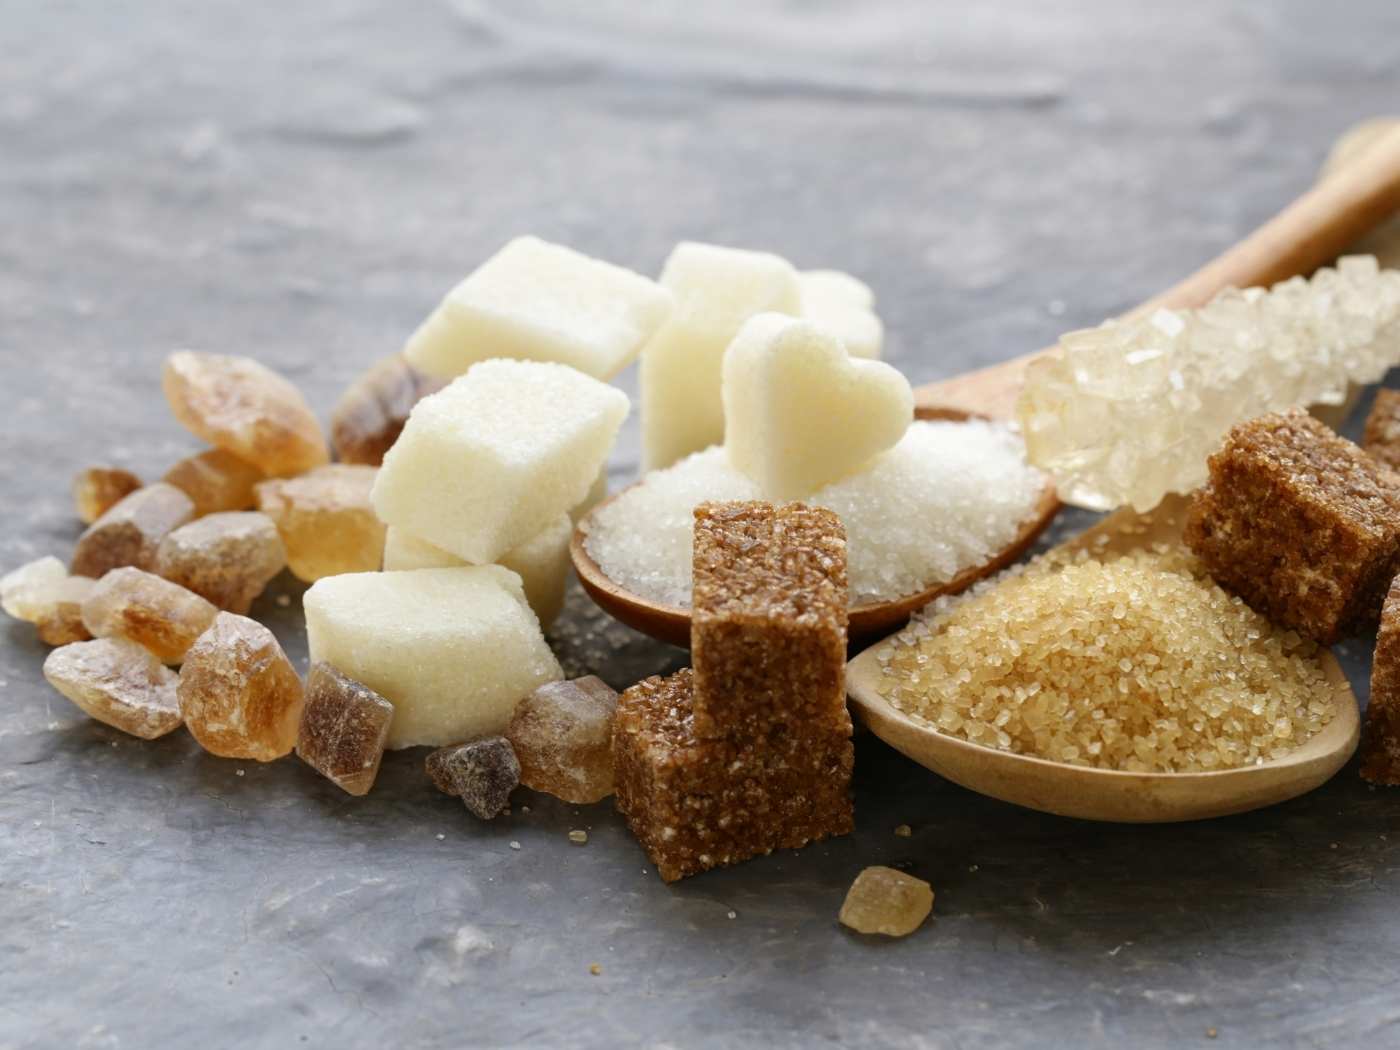 Zucker – was ist zu viel des Süßen?